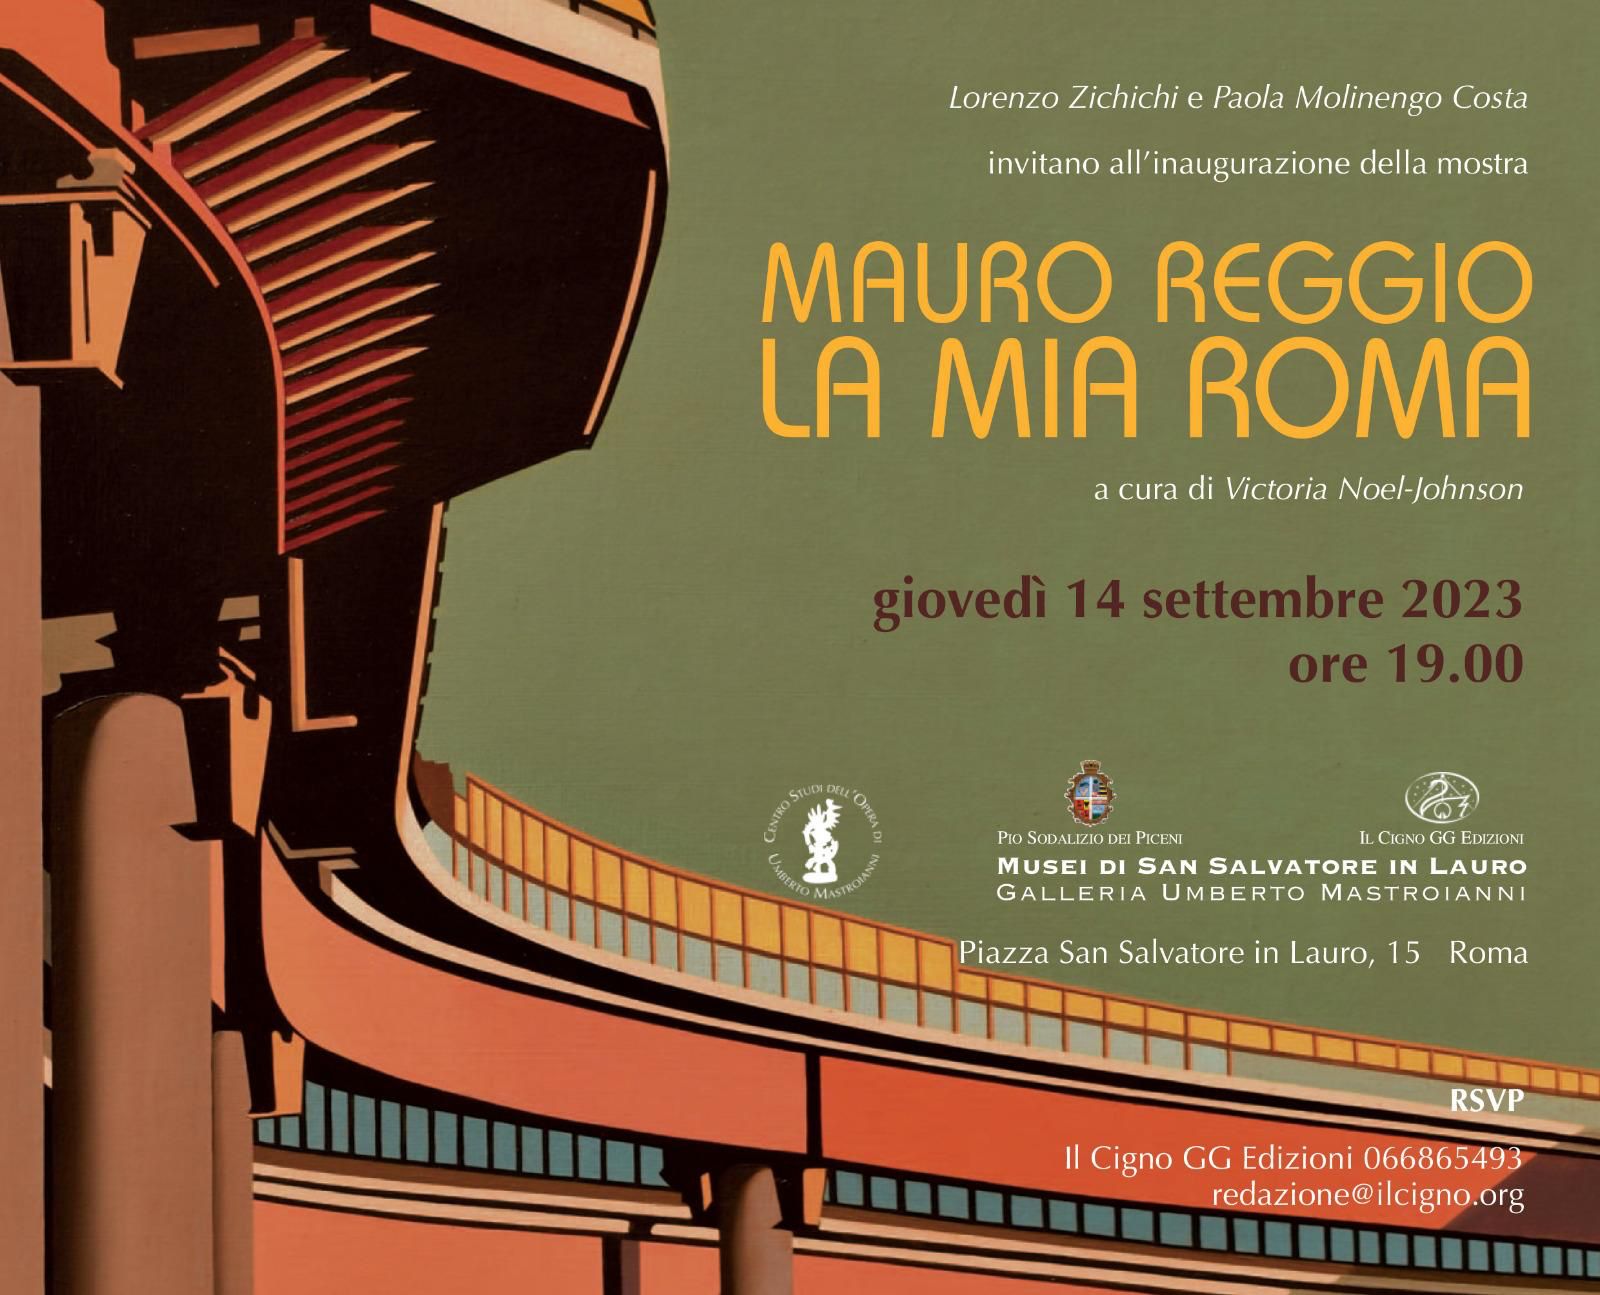 “Mauro Reggio. La mia Roma”, dal 15 settembre al 21 ottobre 2023 presso la Galleria Umberto Mastroianni dei Musei di San Salvatore in Lauro a Roma; il vernissage si terrà giovedì 14 settembre alle ore 19.00